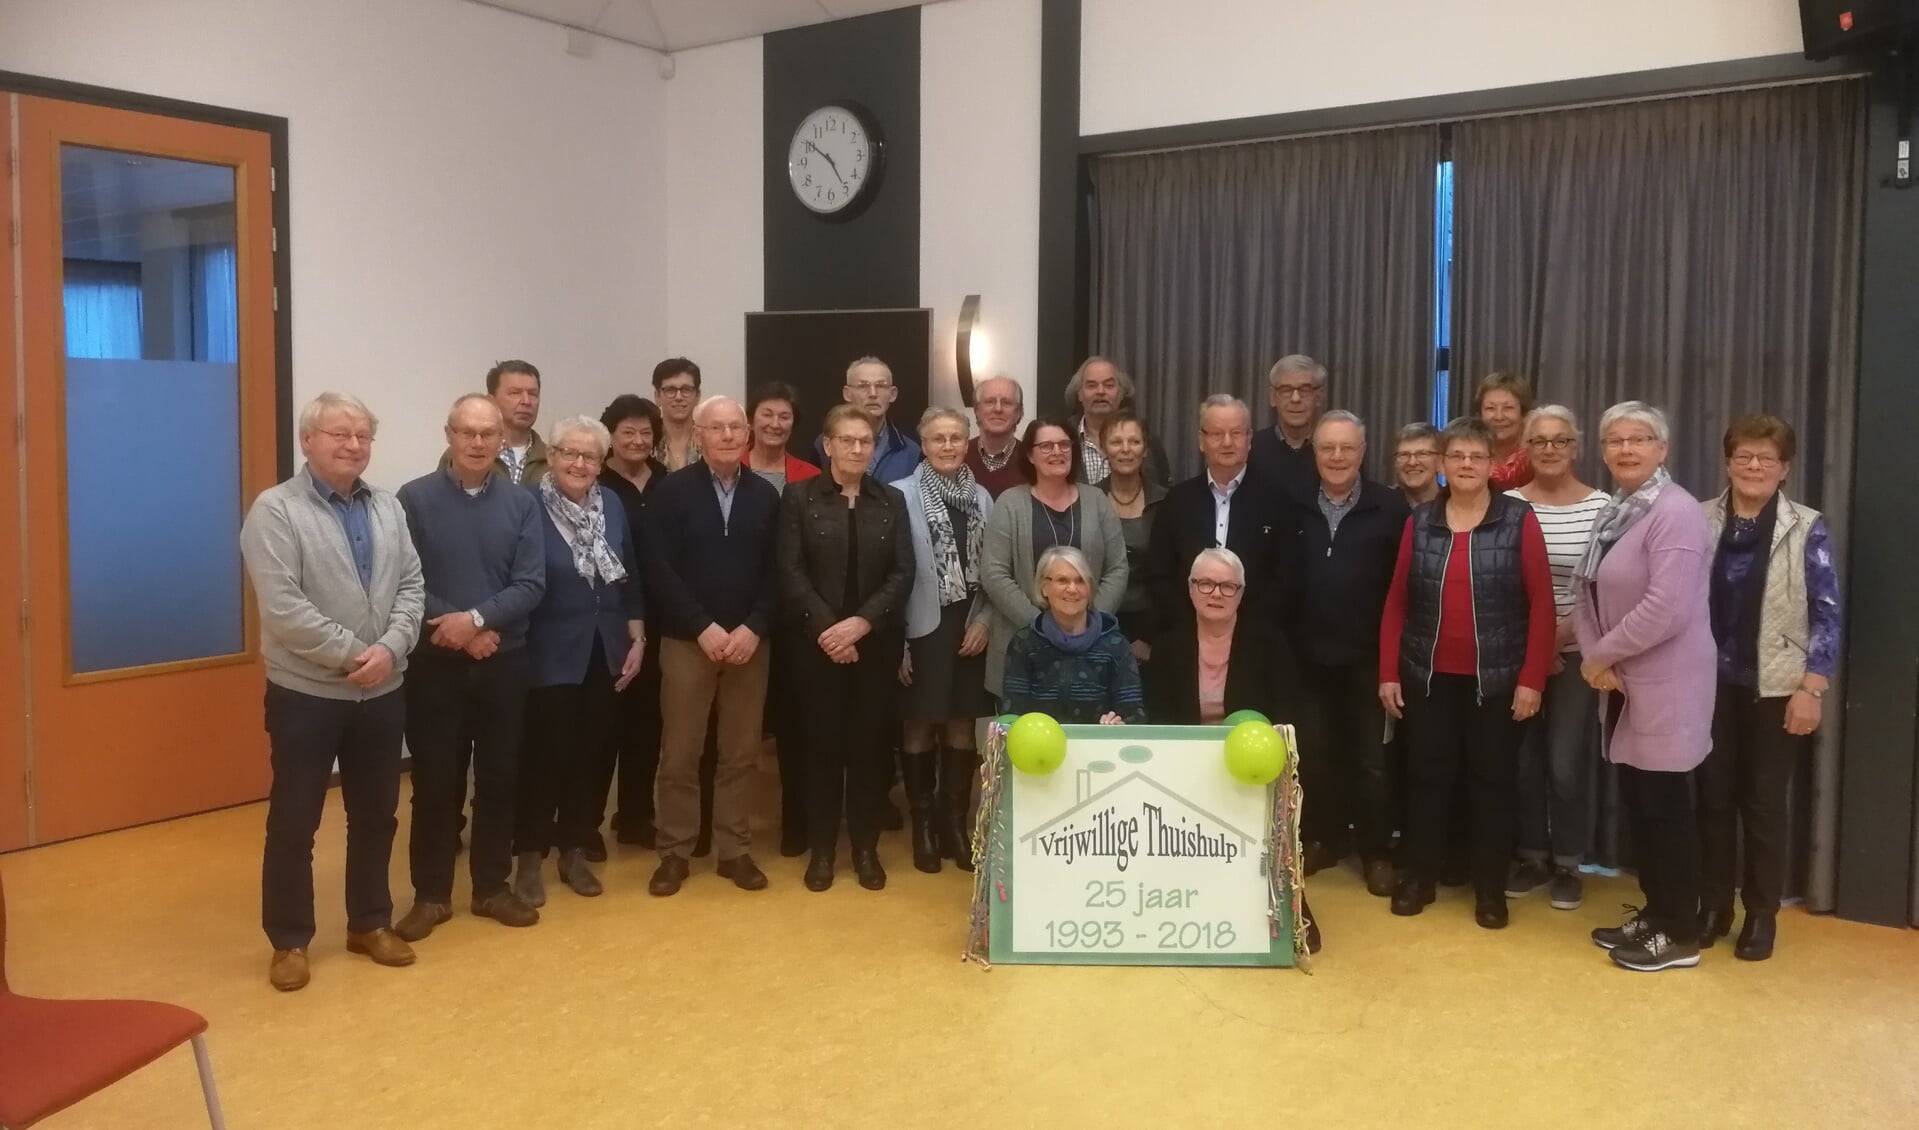 Vrijwillige Thuishulp gemeente Sint Anthonis bestaat 25 jaar.